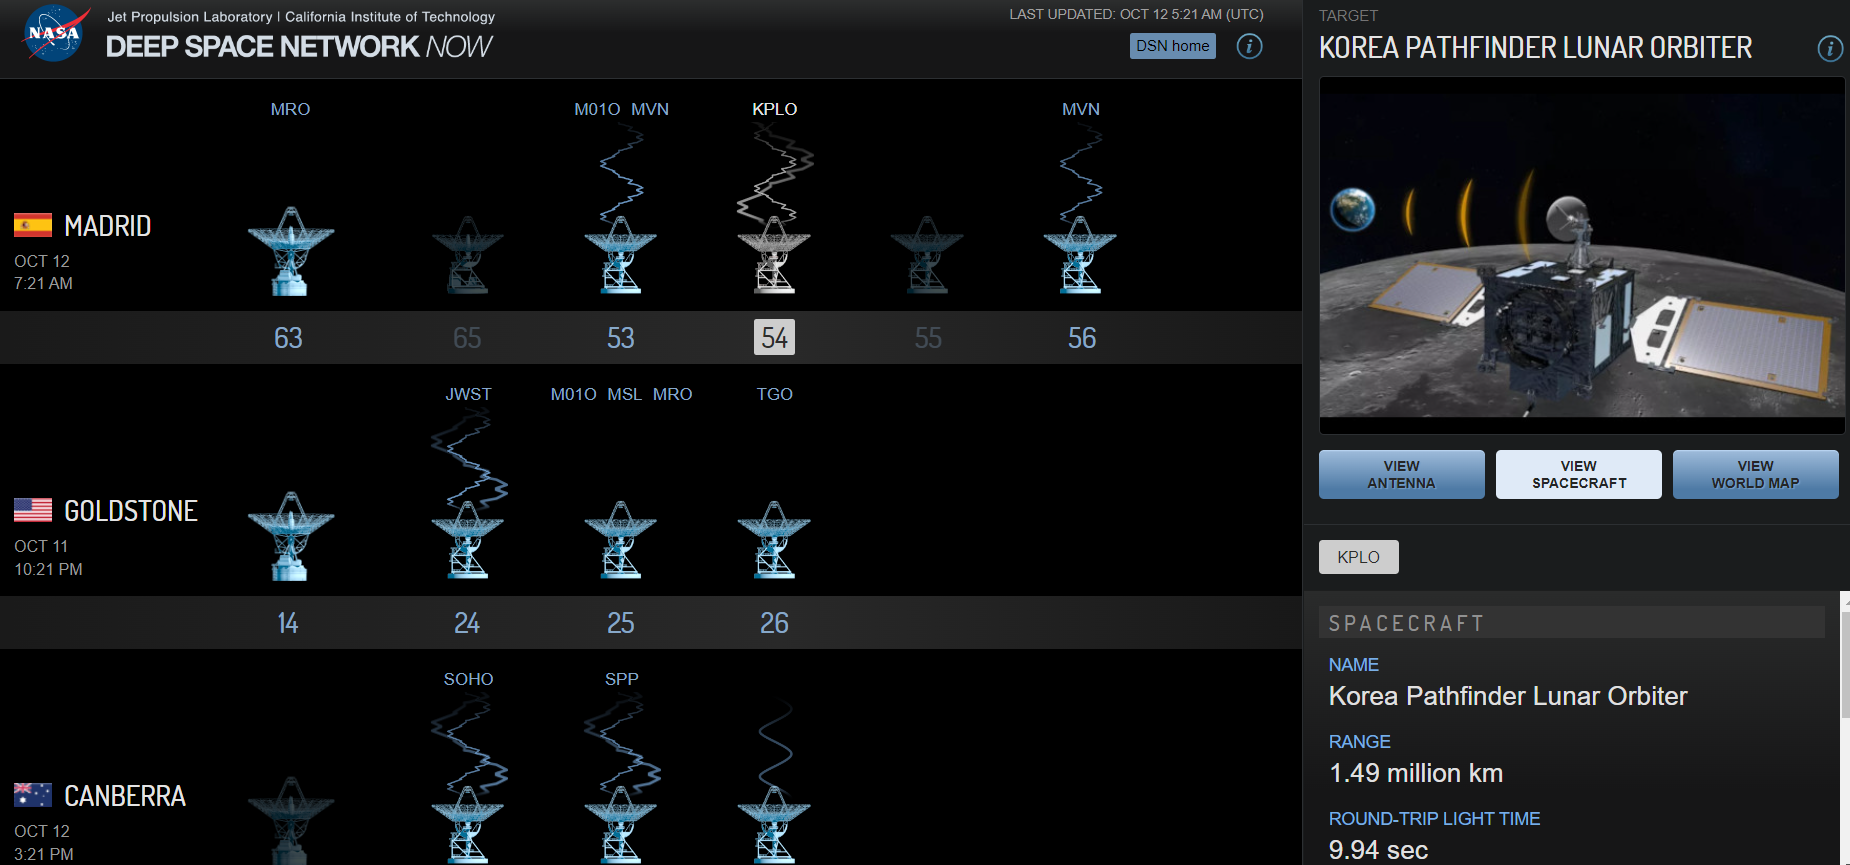 NASA 심우주 통신망과 우주 탐사선의 교신 상태를 실시간 확인할 수 있는 DSN  Now 홈페이지. 다누리(KPLO)가 마드리드 54번 안테나에서 데이터를 송수신하고 있다.